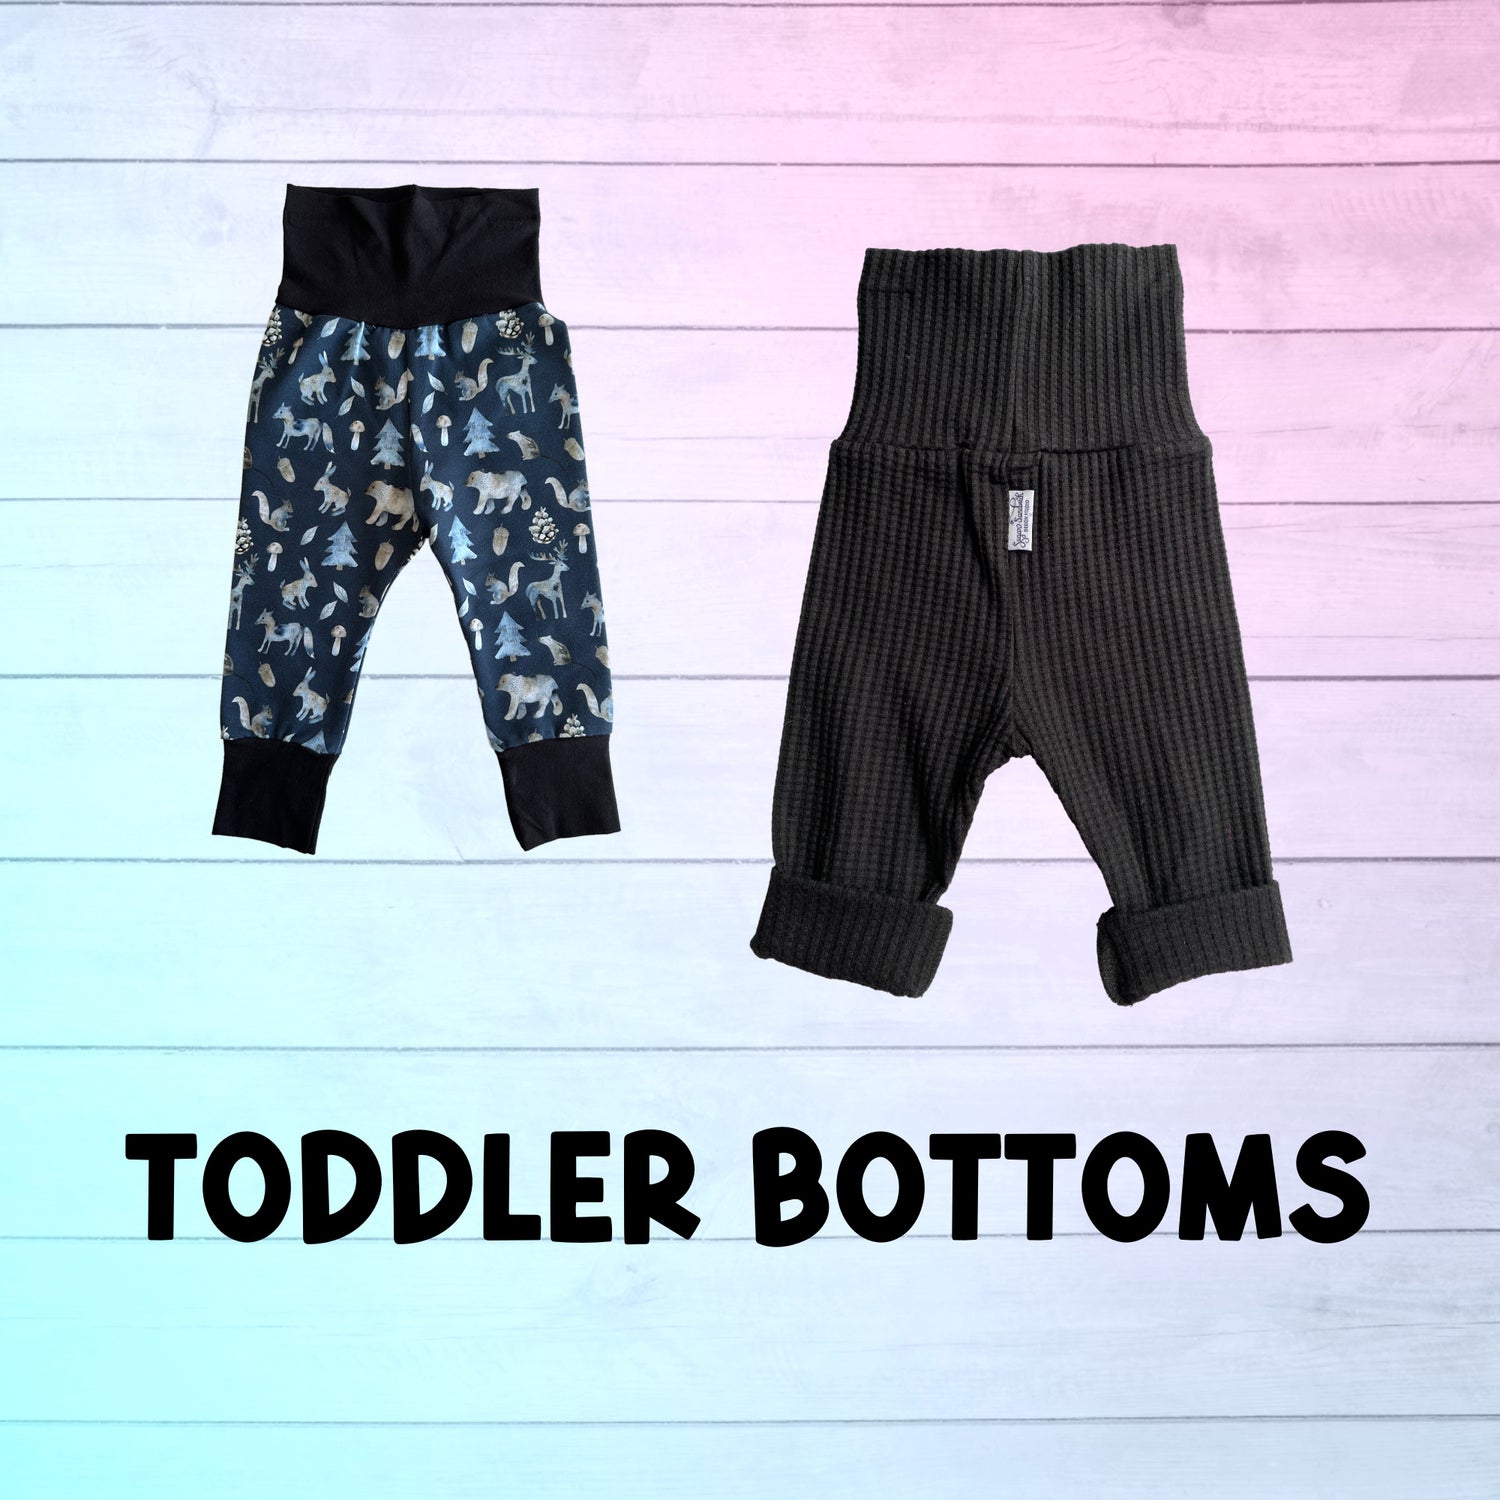 Toddler Bottoms